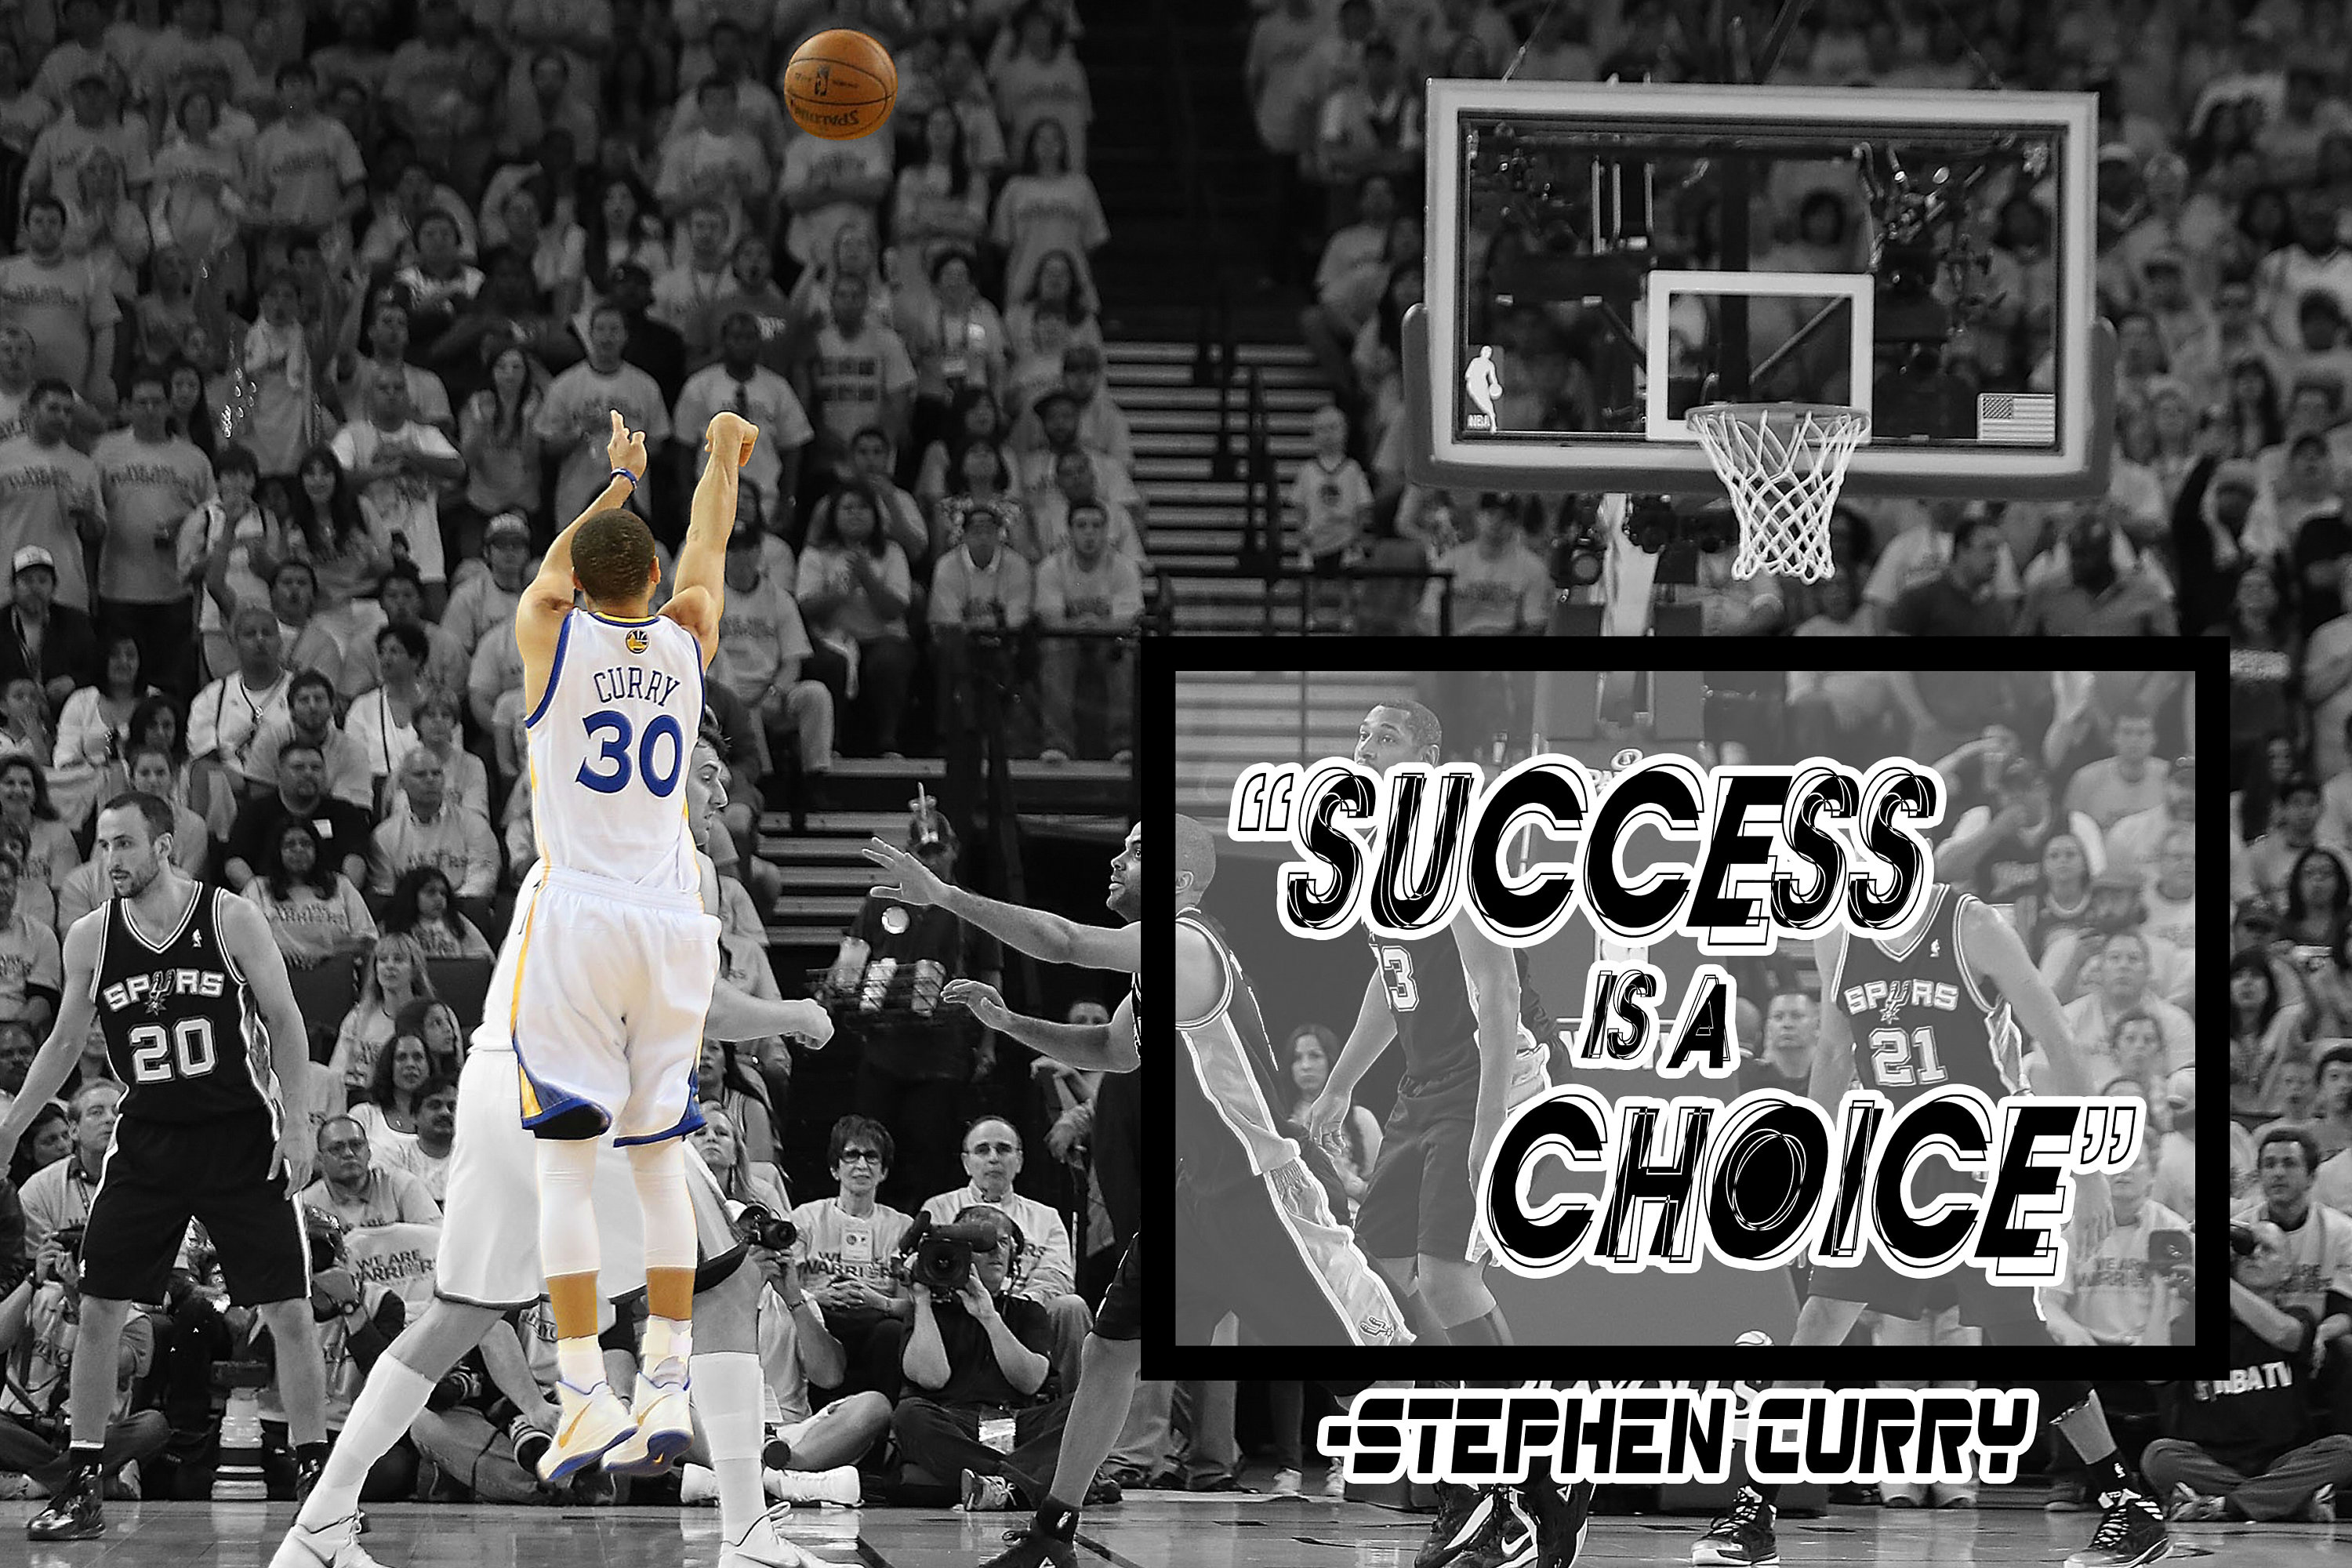 Stephen Curry Poster Golden State Warriors Wall Art 